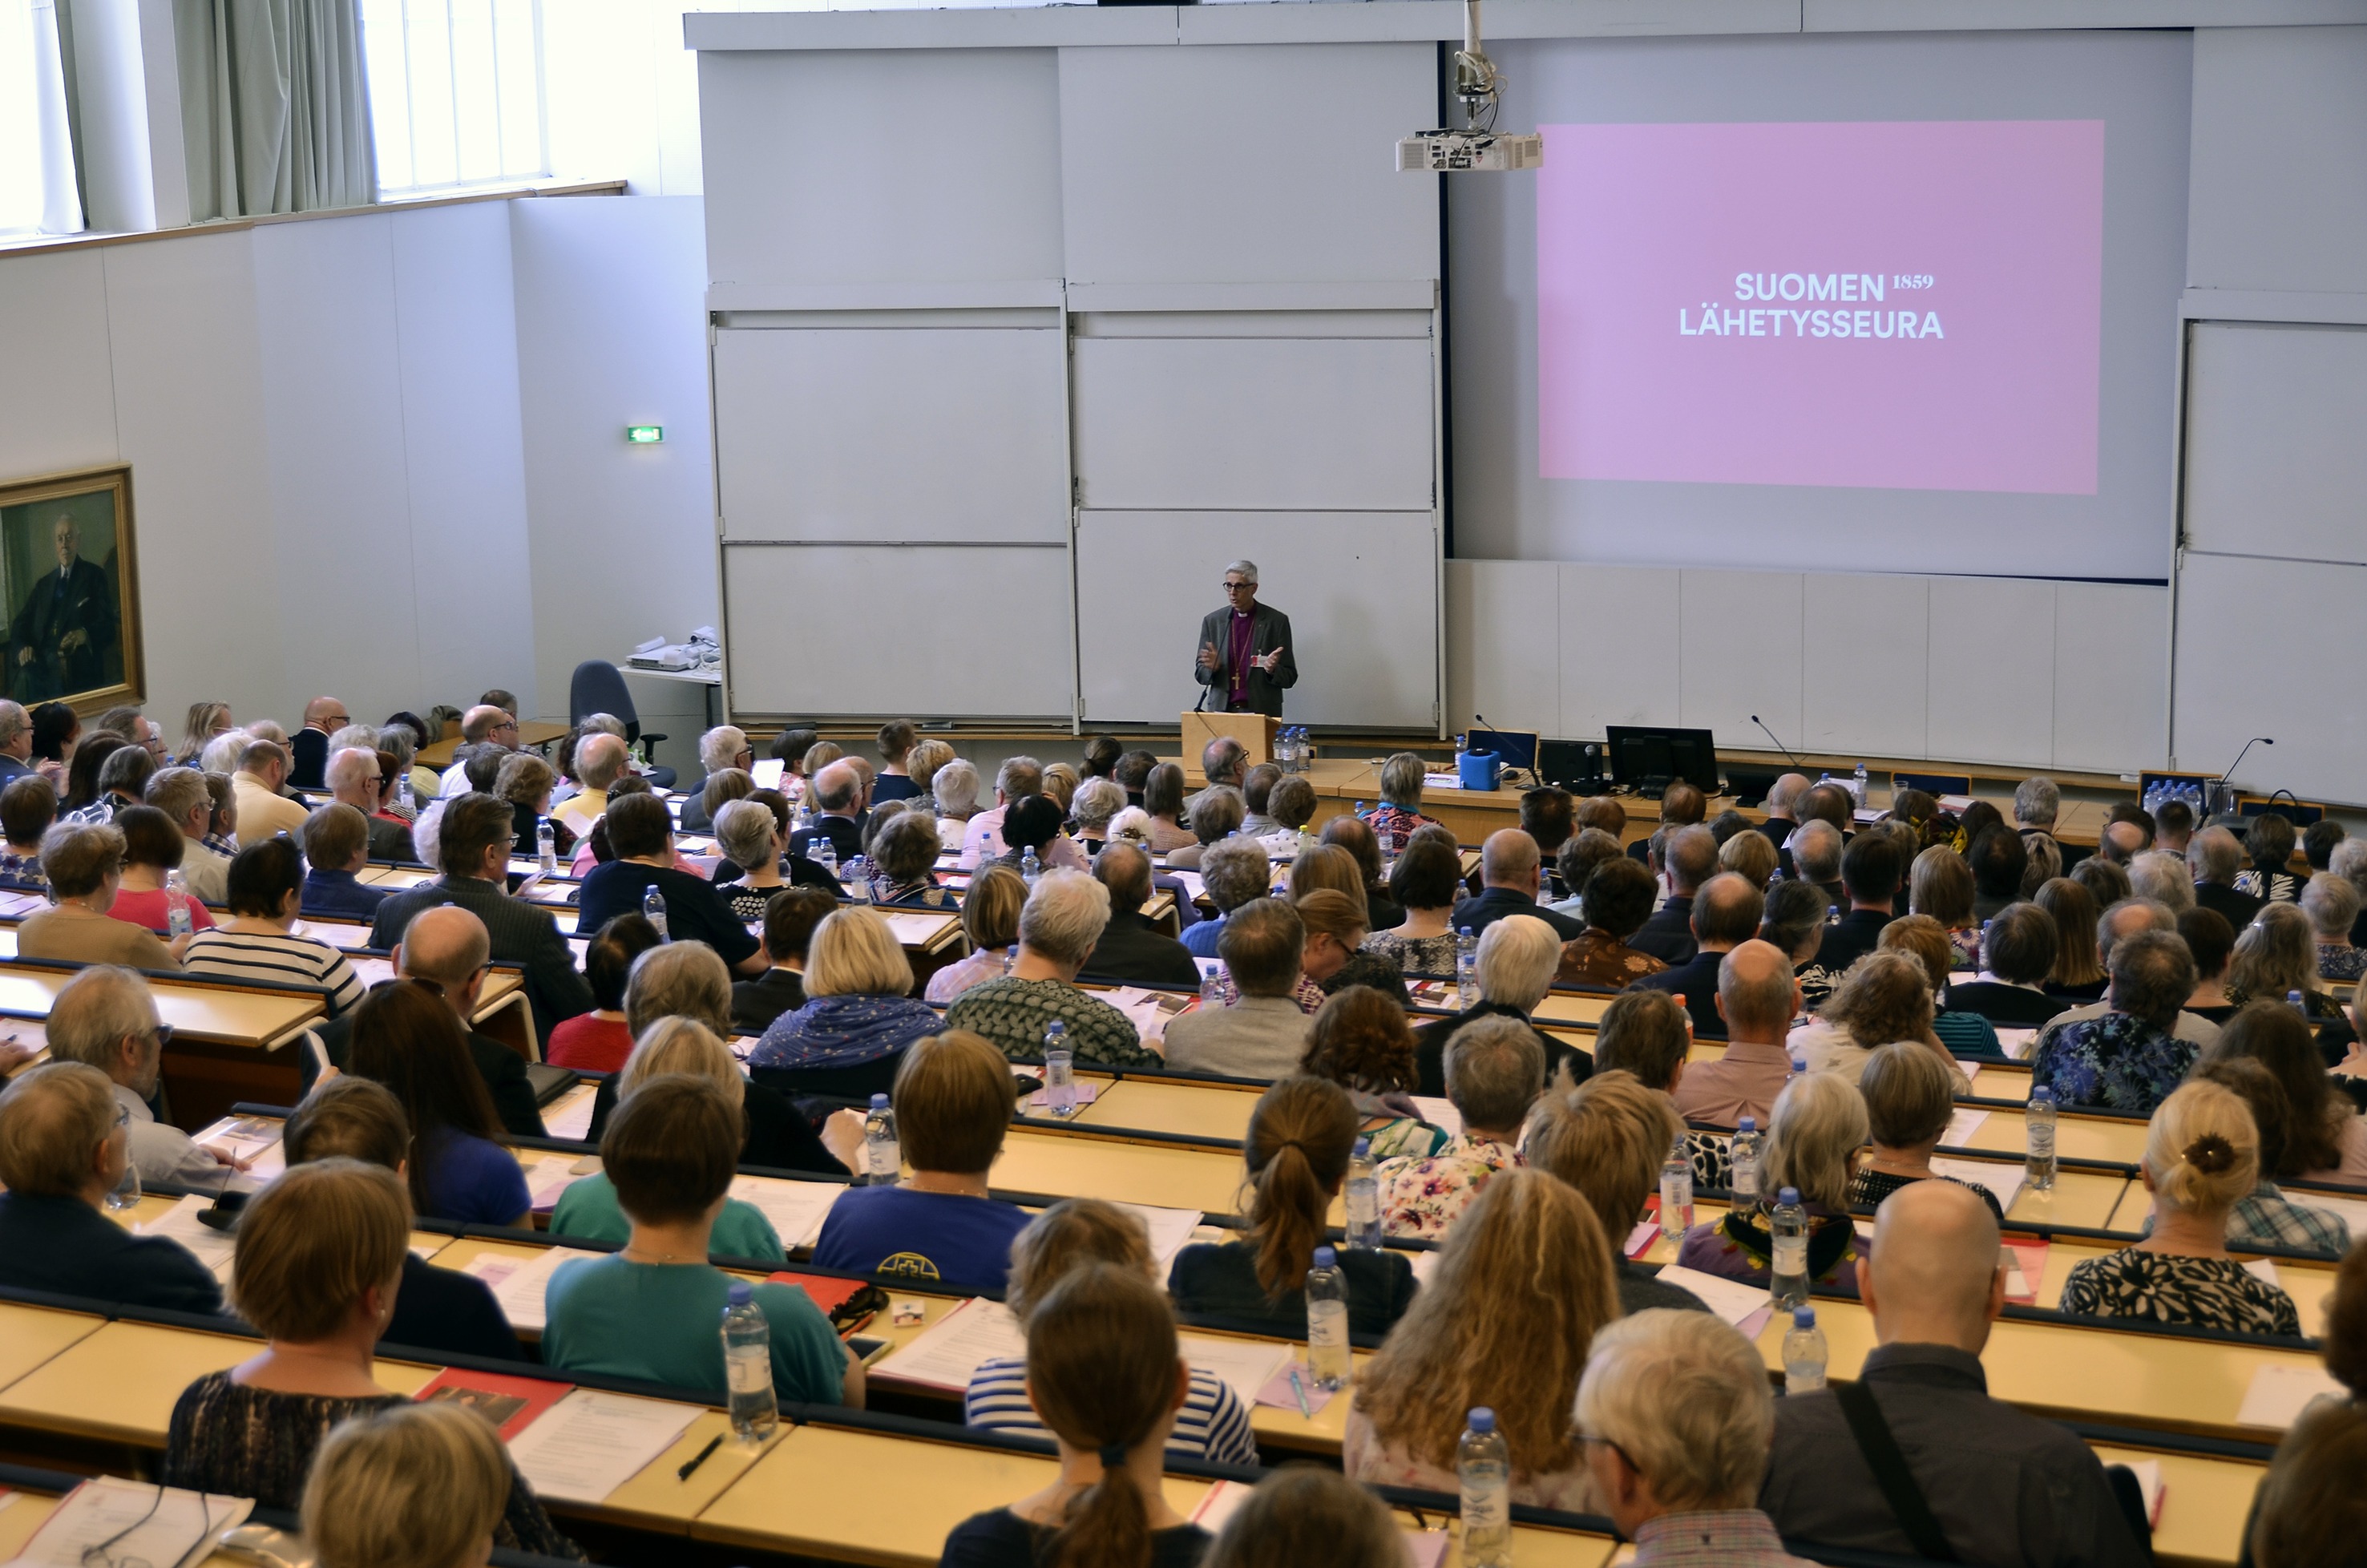 Suomen Lähetysseuran vuosikokous pidettiin Turun yliopiston tiloissa Lähetysjuhlien yhteydessä 20.5. Kuva Kirsi Elo